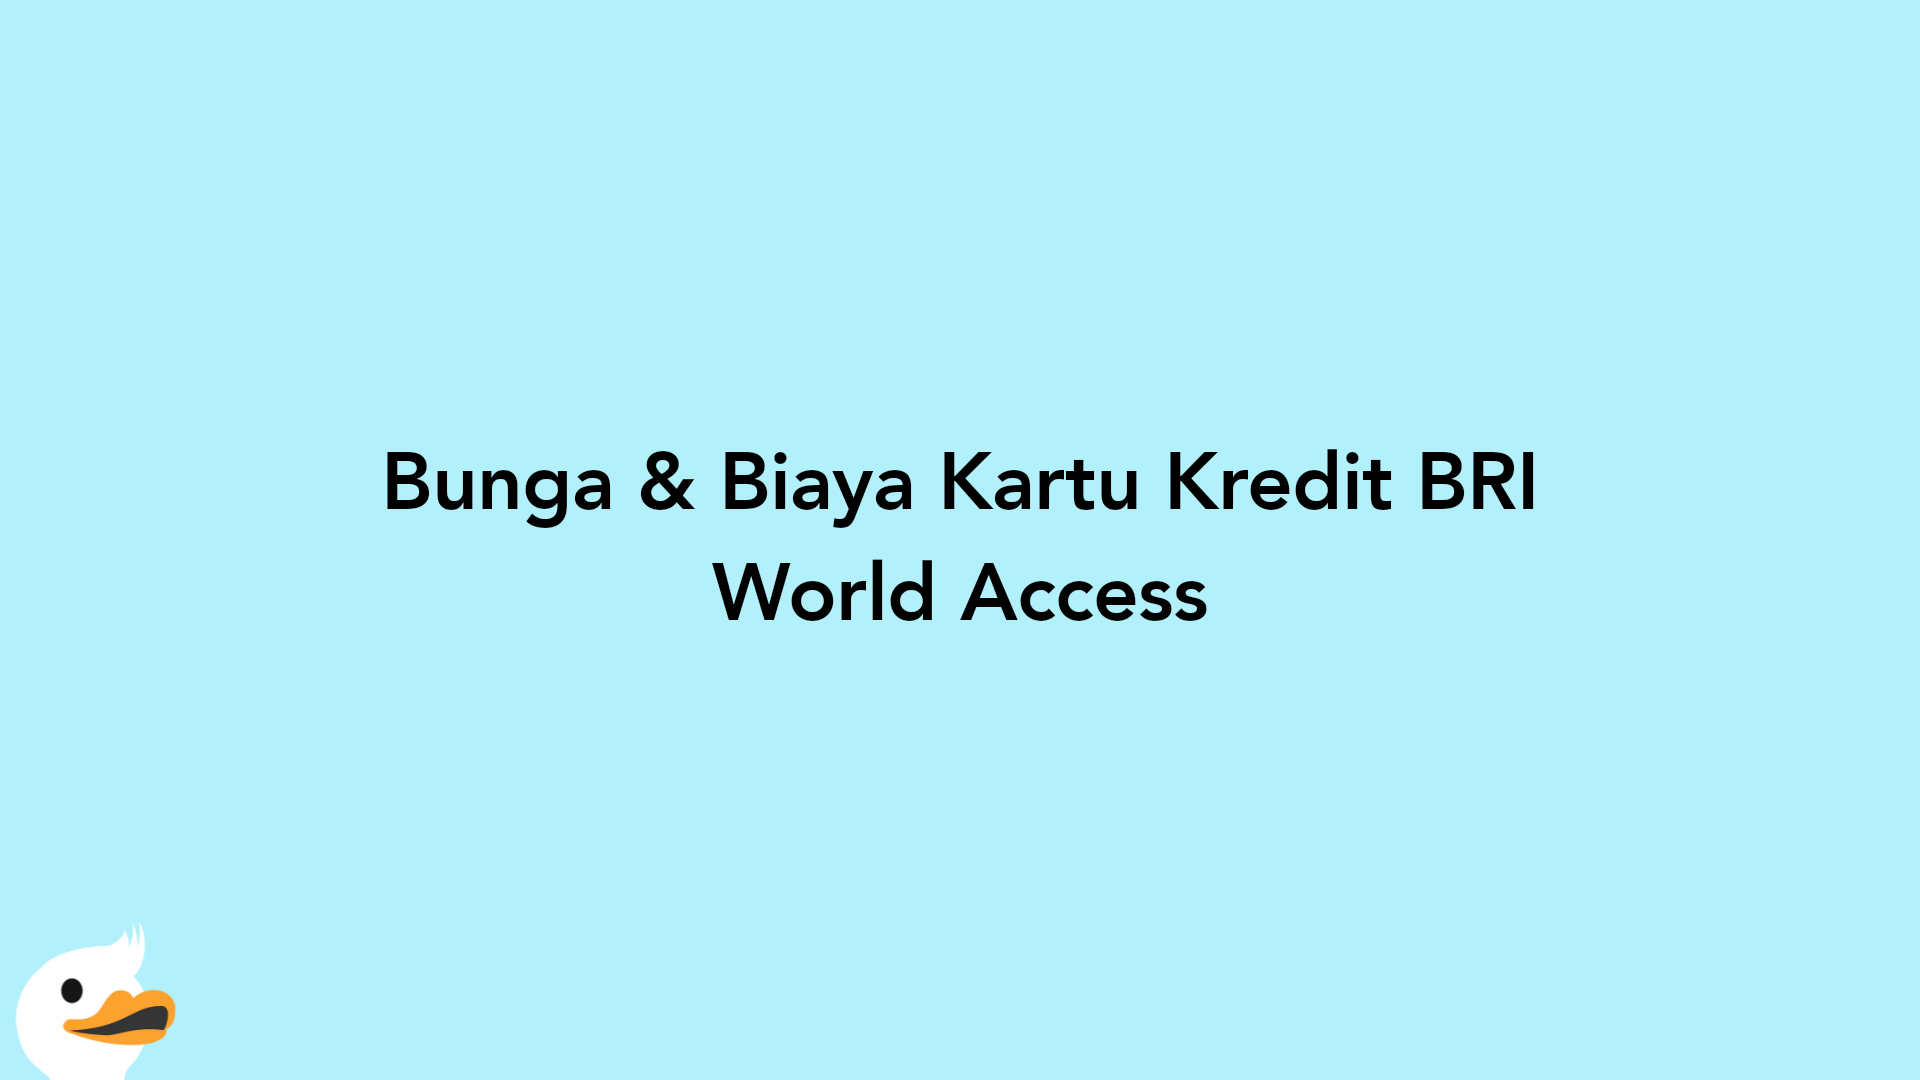 Bunga & Biaya Kartu Kredit BRI World Access